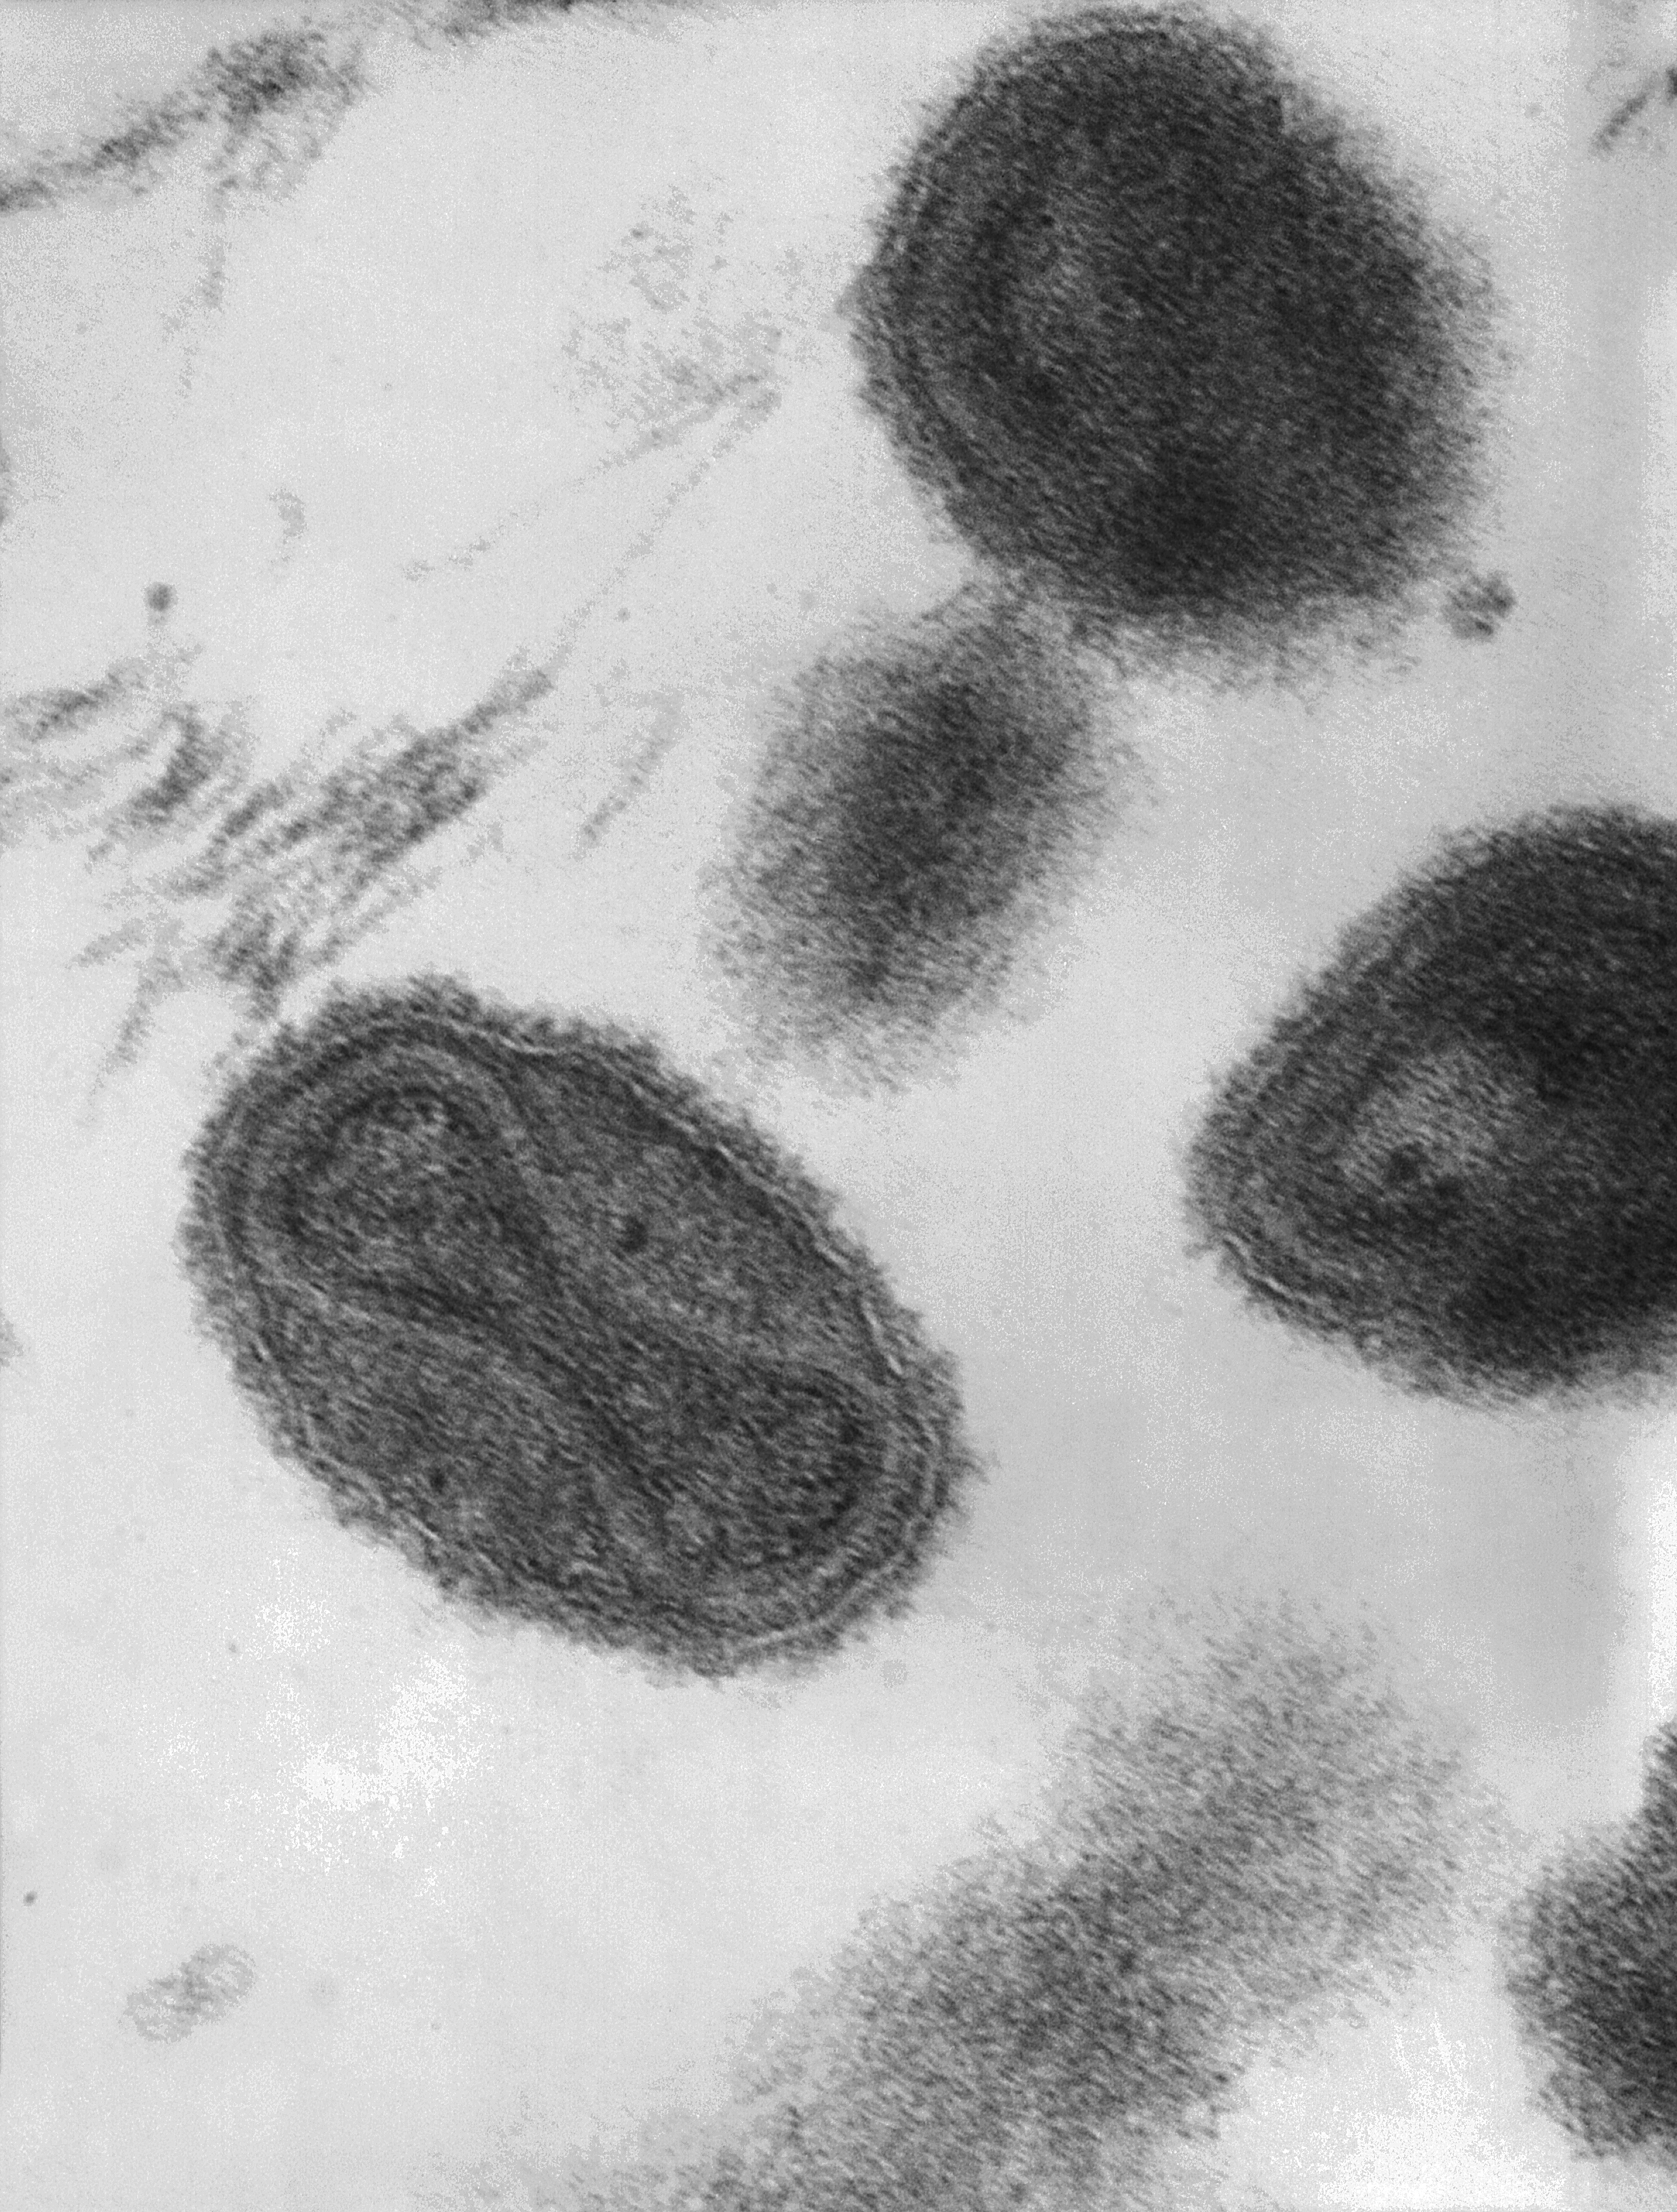 Virus de la viruela (Viruela). Dentro del virión podemos ver una especie de estructura con forma de mancuerna, se trata del material genético del virus, que es ADN. En la imagen podemos ver una micrografía al microscopio electrónico de transmisión (TEM) a 370.000 aumentos.